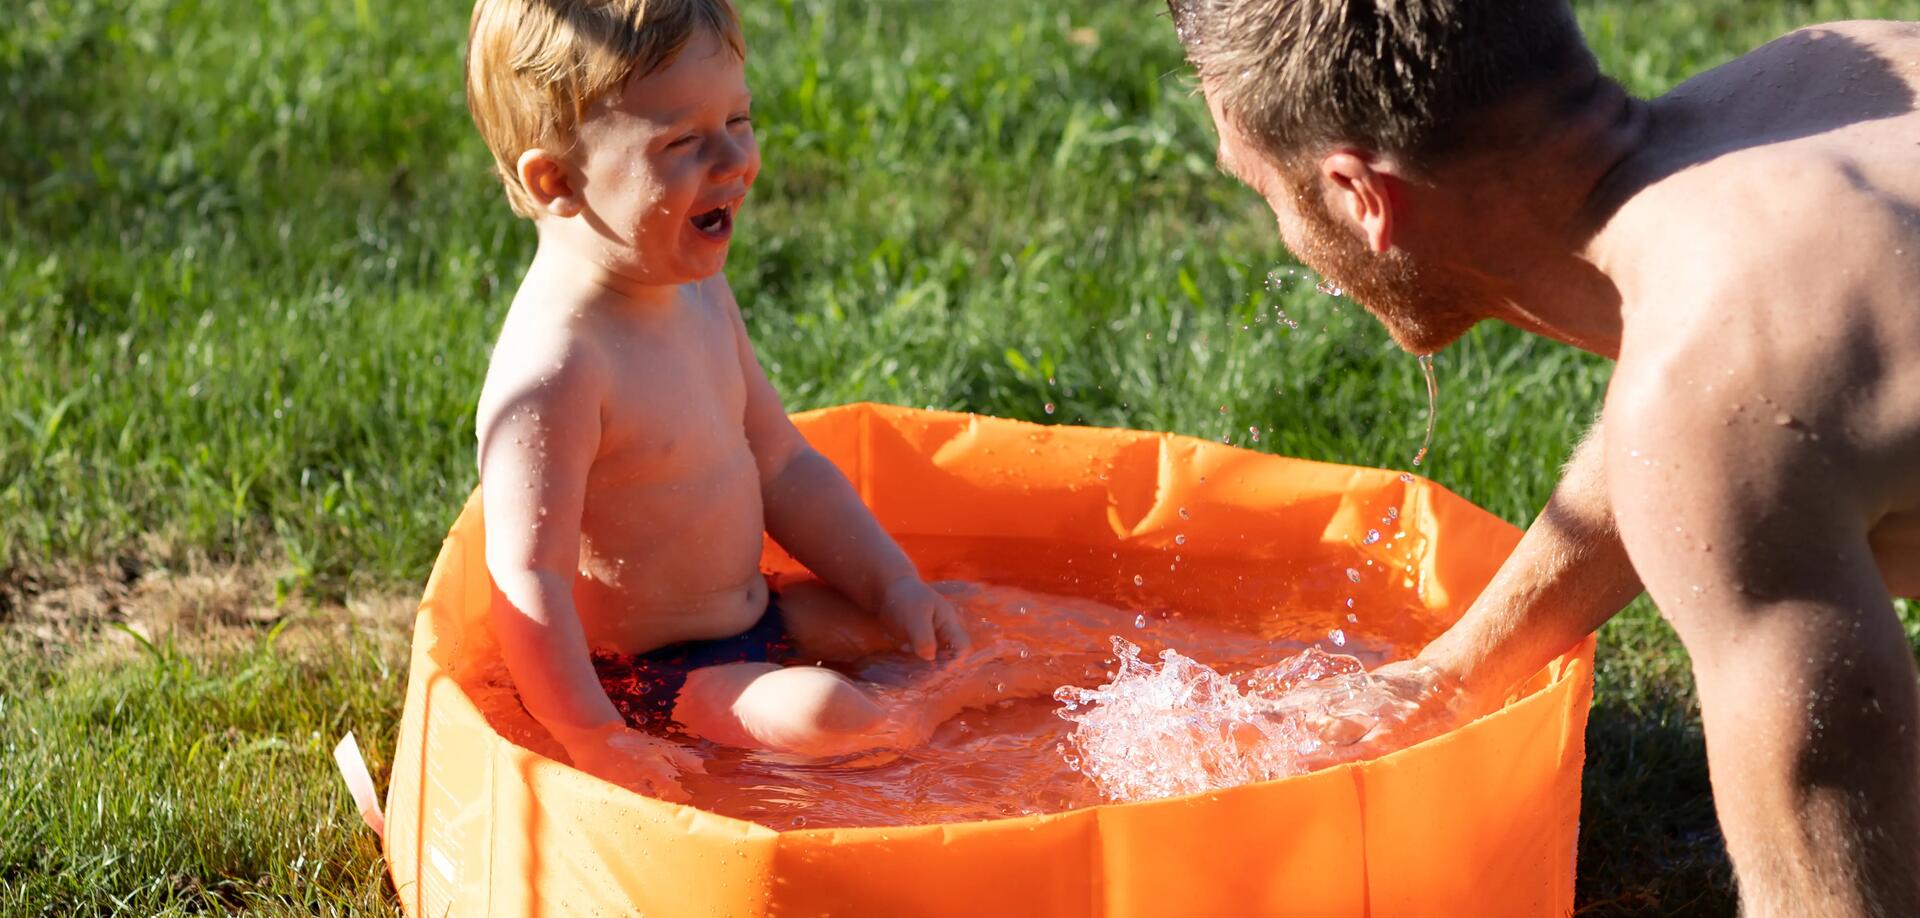 Comment choisir une piscine pour votre enfant ?